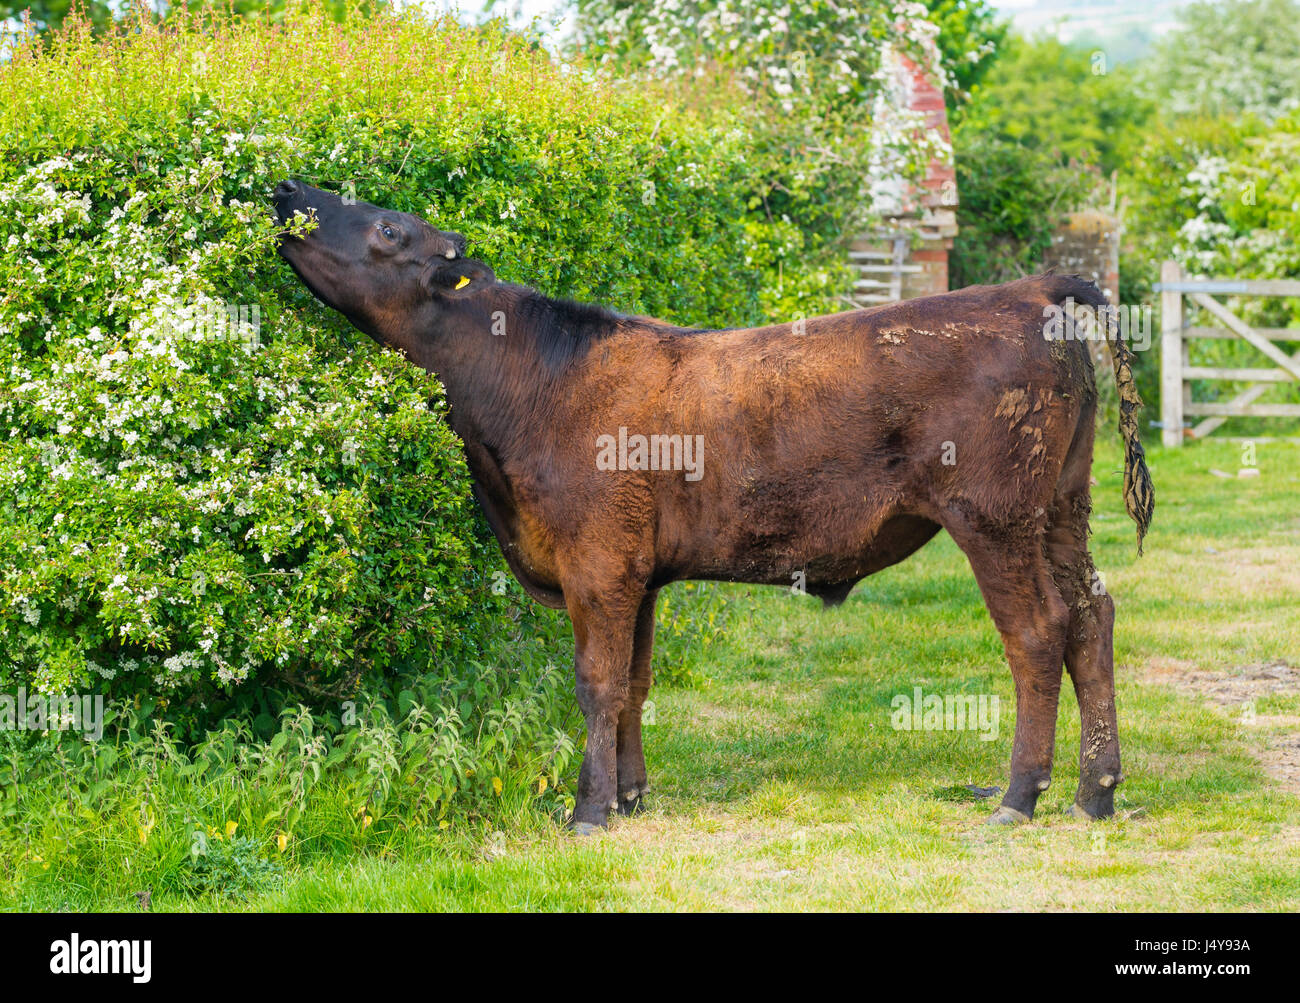 Manger de la vache d'un feuillage de bush. Afficher la taille d'une vache c'est l'étirement du cou jusqu'à atteindre les feuilles à manger. Banque D'Images